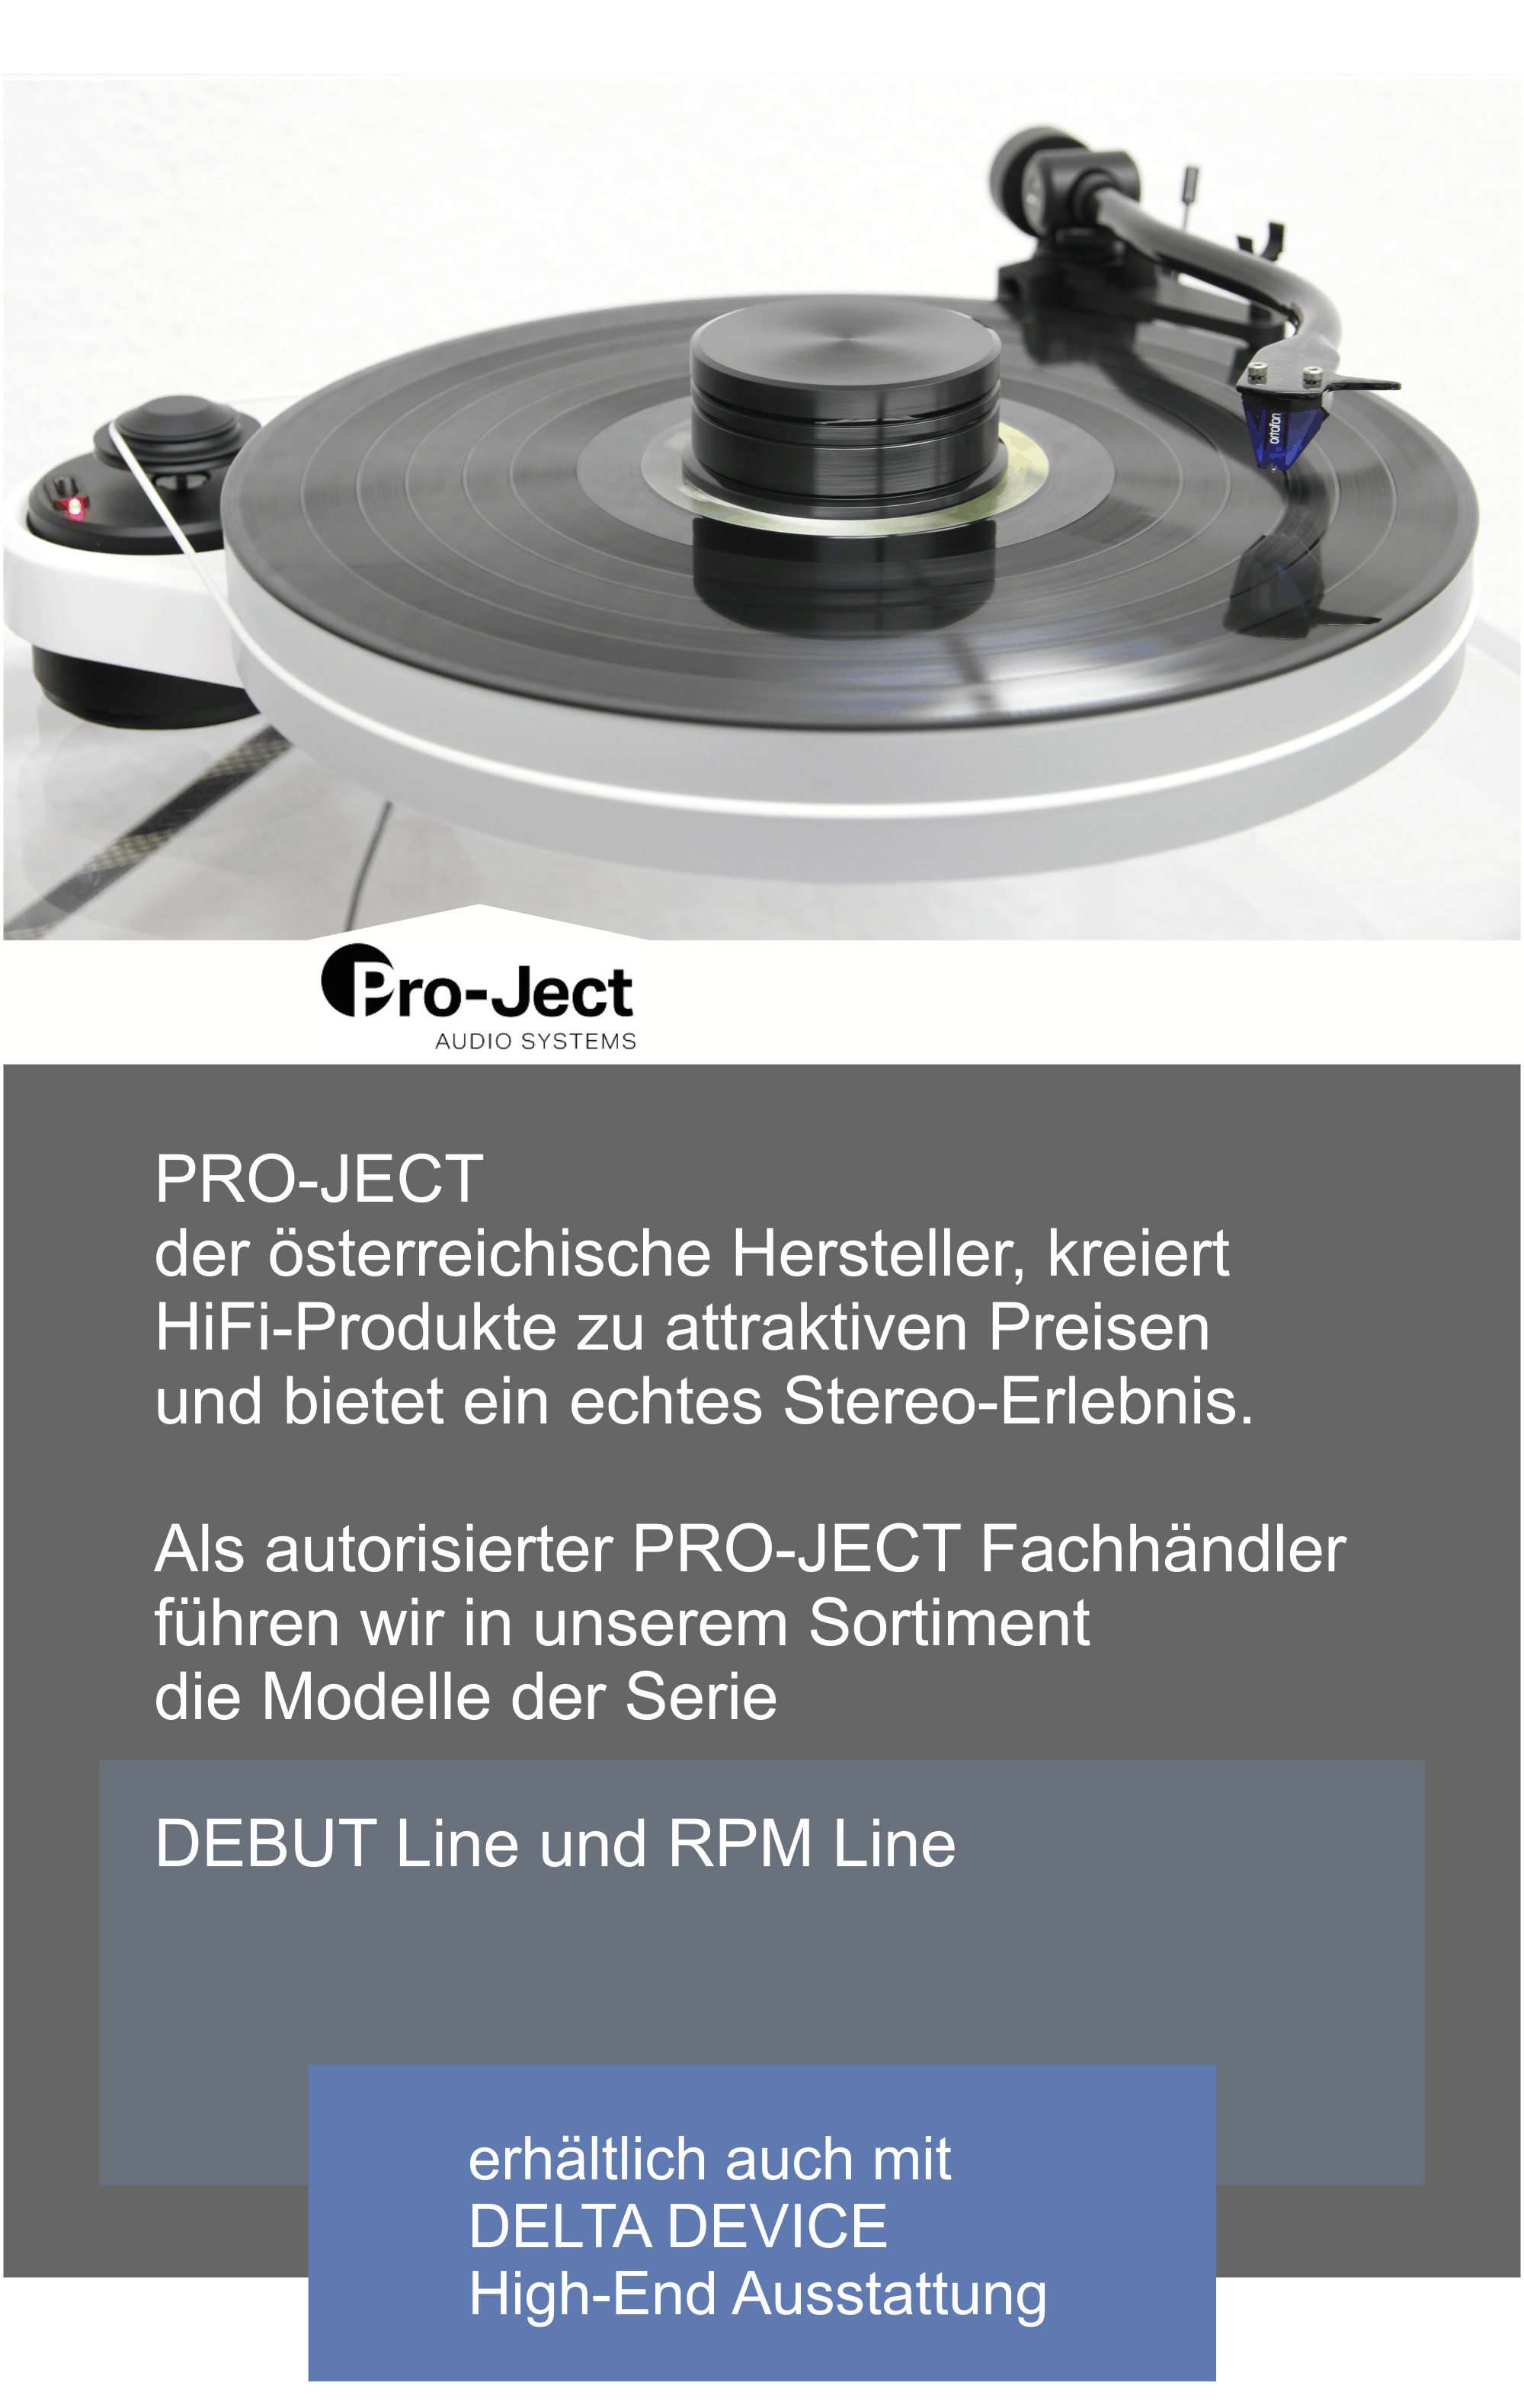  PRO-JECT, der österreichische Hersteller kreiert  HiFi-Produkte zu attraktiven Preisen und bietet  ein echtes Stereo-Erlebnis.  Wir sind autorisierter PRO-JECT Fachhändler und Sie finden bei uns Modelle der Serie  DEBUT Line und RPM Line | auch erhältlich mit DELTA DEVICE High-End Ausstattung